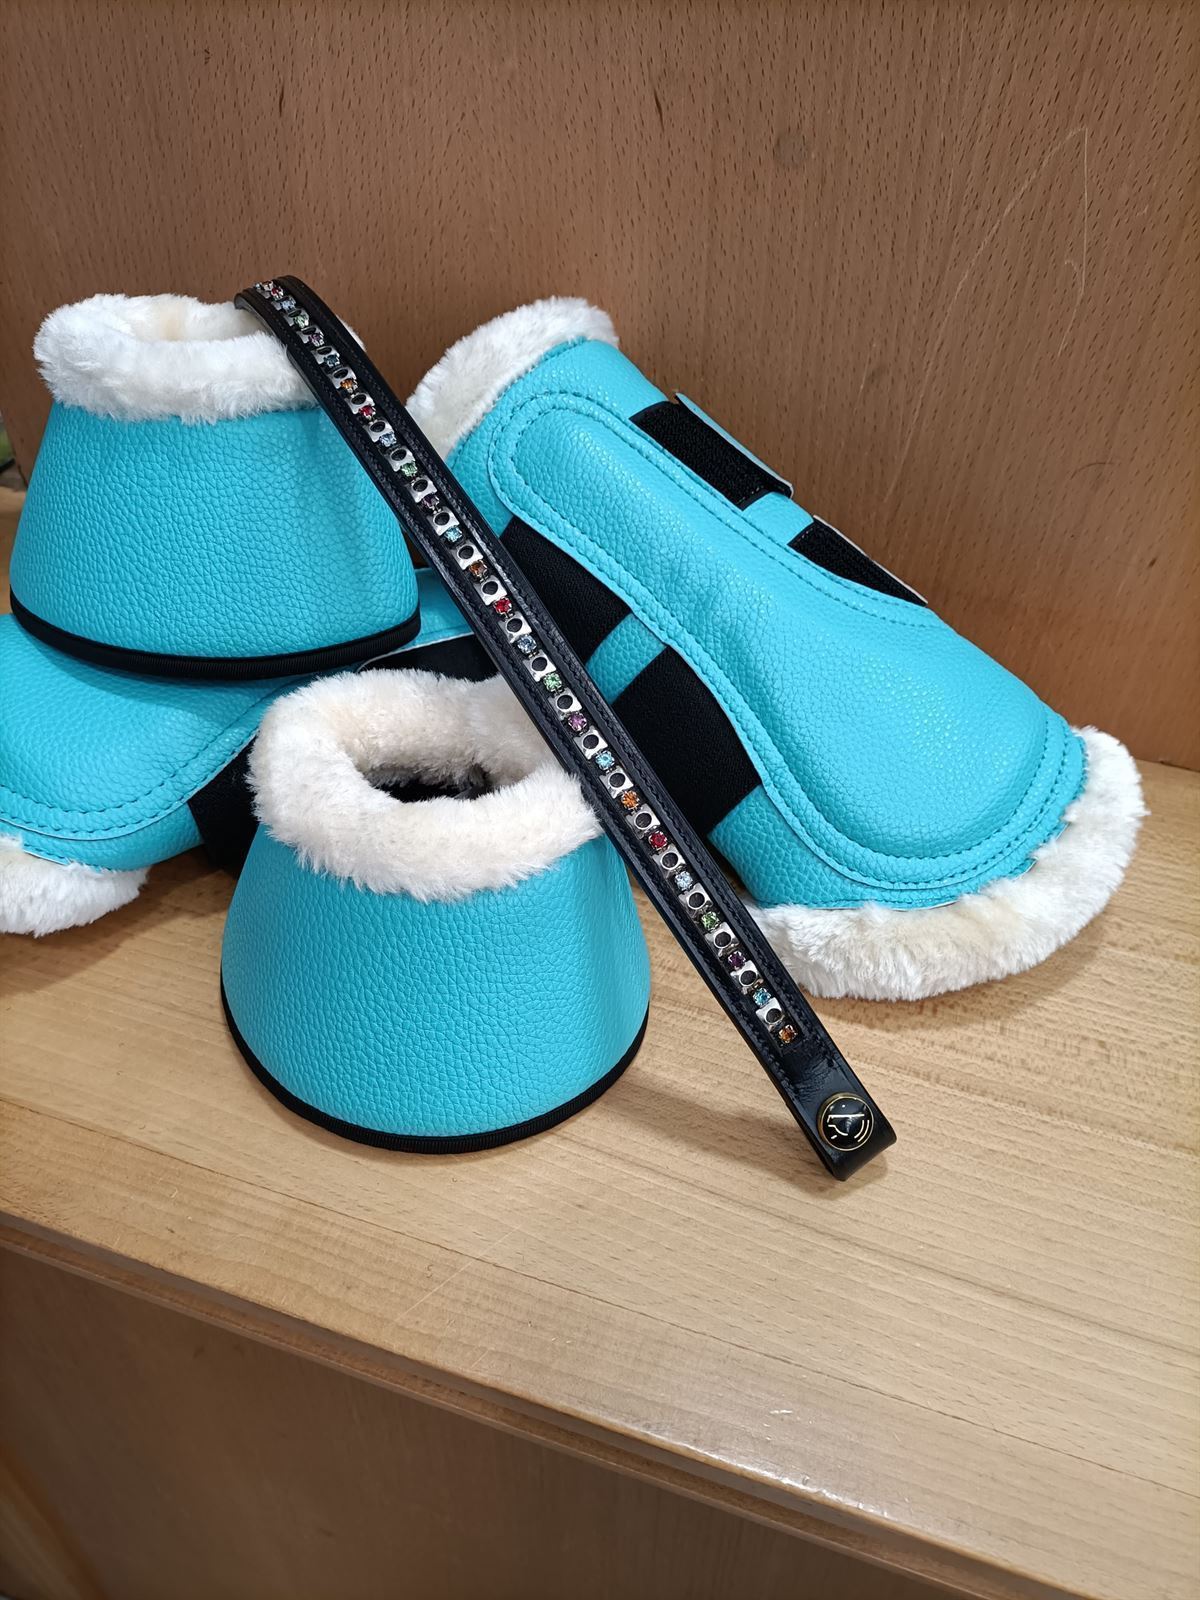 Protectores HKM Sports Equipment Comfort Premium Fur color azul turquesa TALLA S (par) - Imagen 1